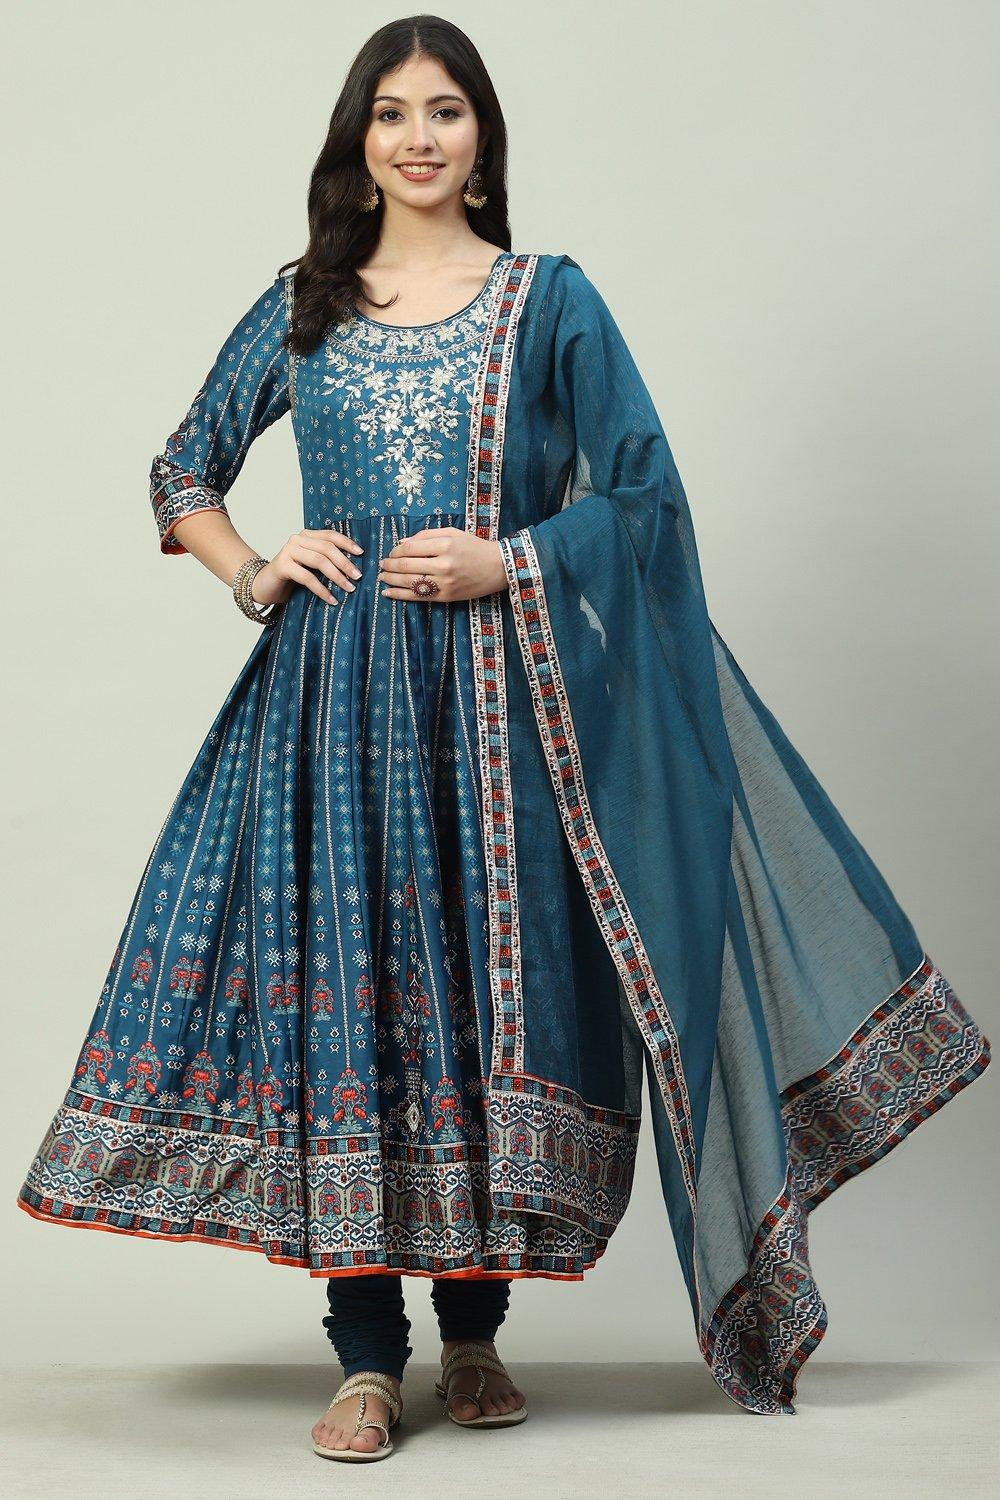 Buy online Teal Cotton Anarkali Suit Set for women at best price at biba.in  - SKDINAYAT8189AW22TEAL